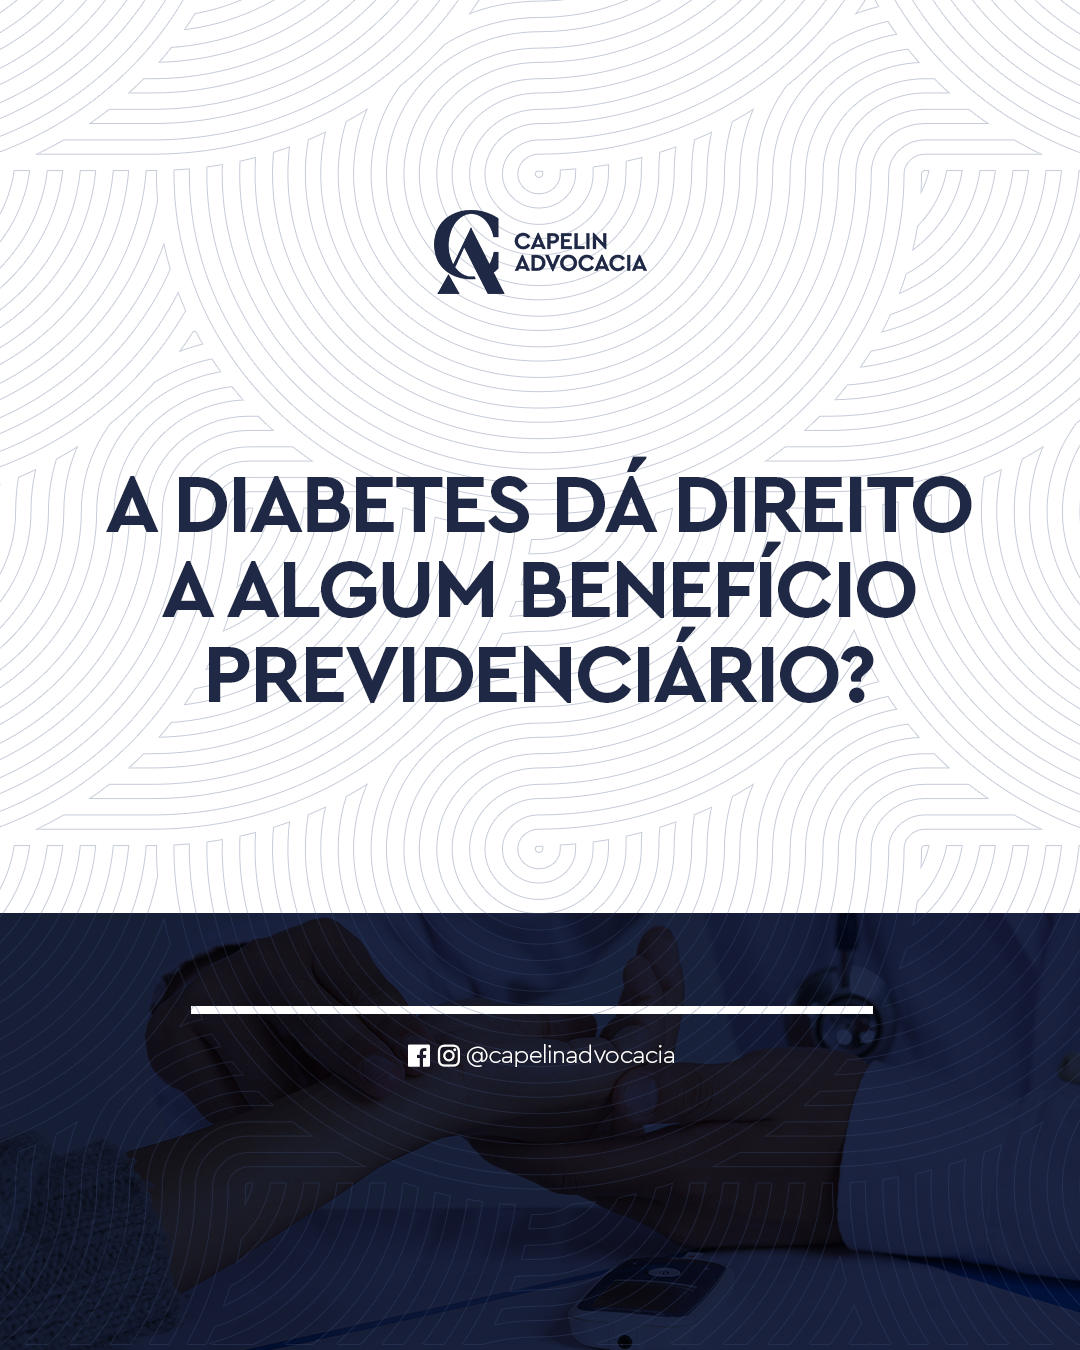 A diabetes dá direito a algum benefício previdenciário?